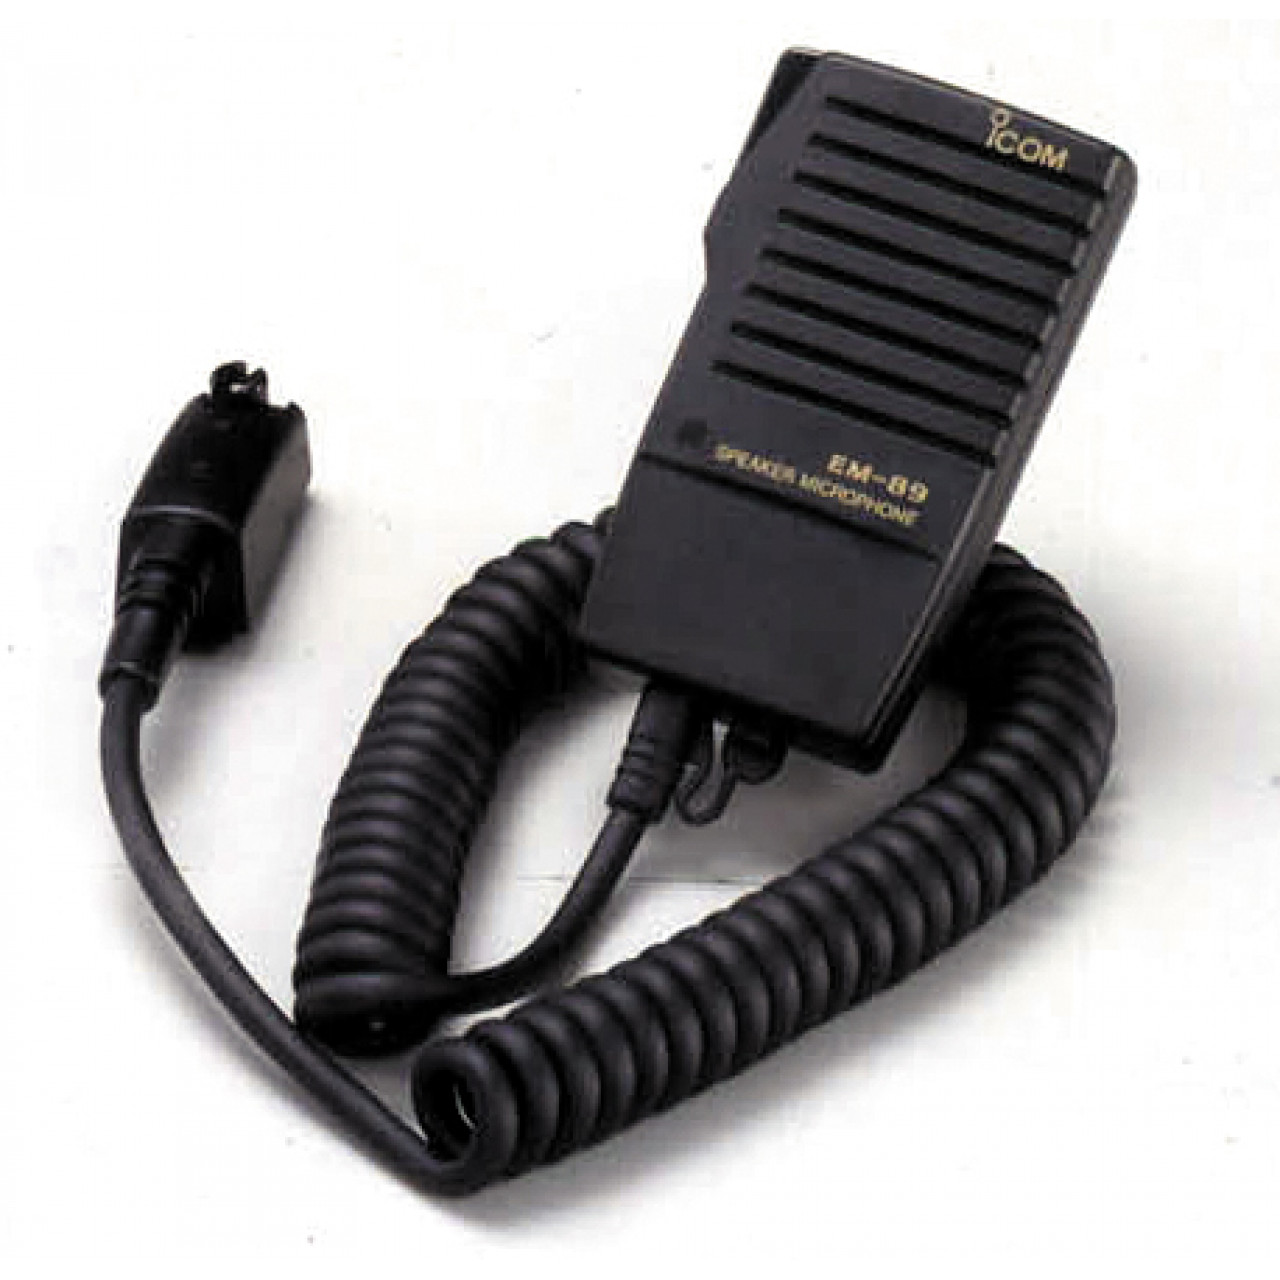 EM-89 Microphones - ICOM